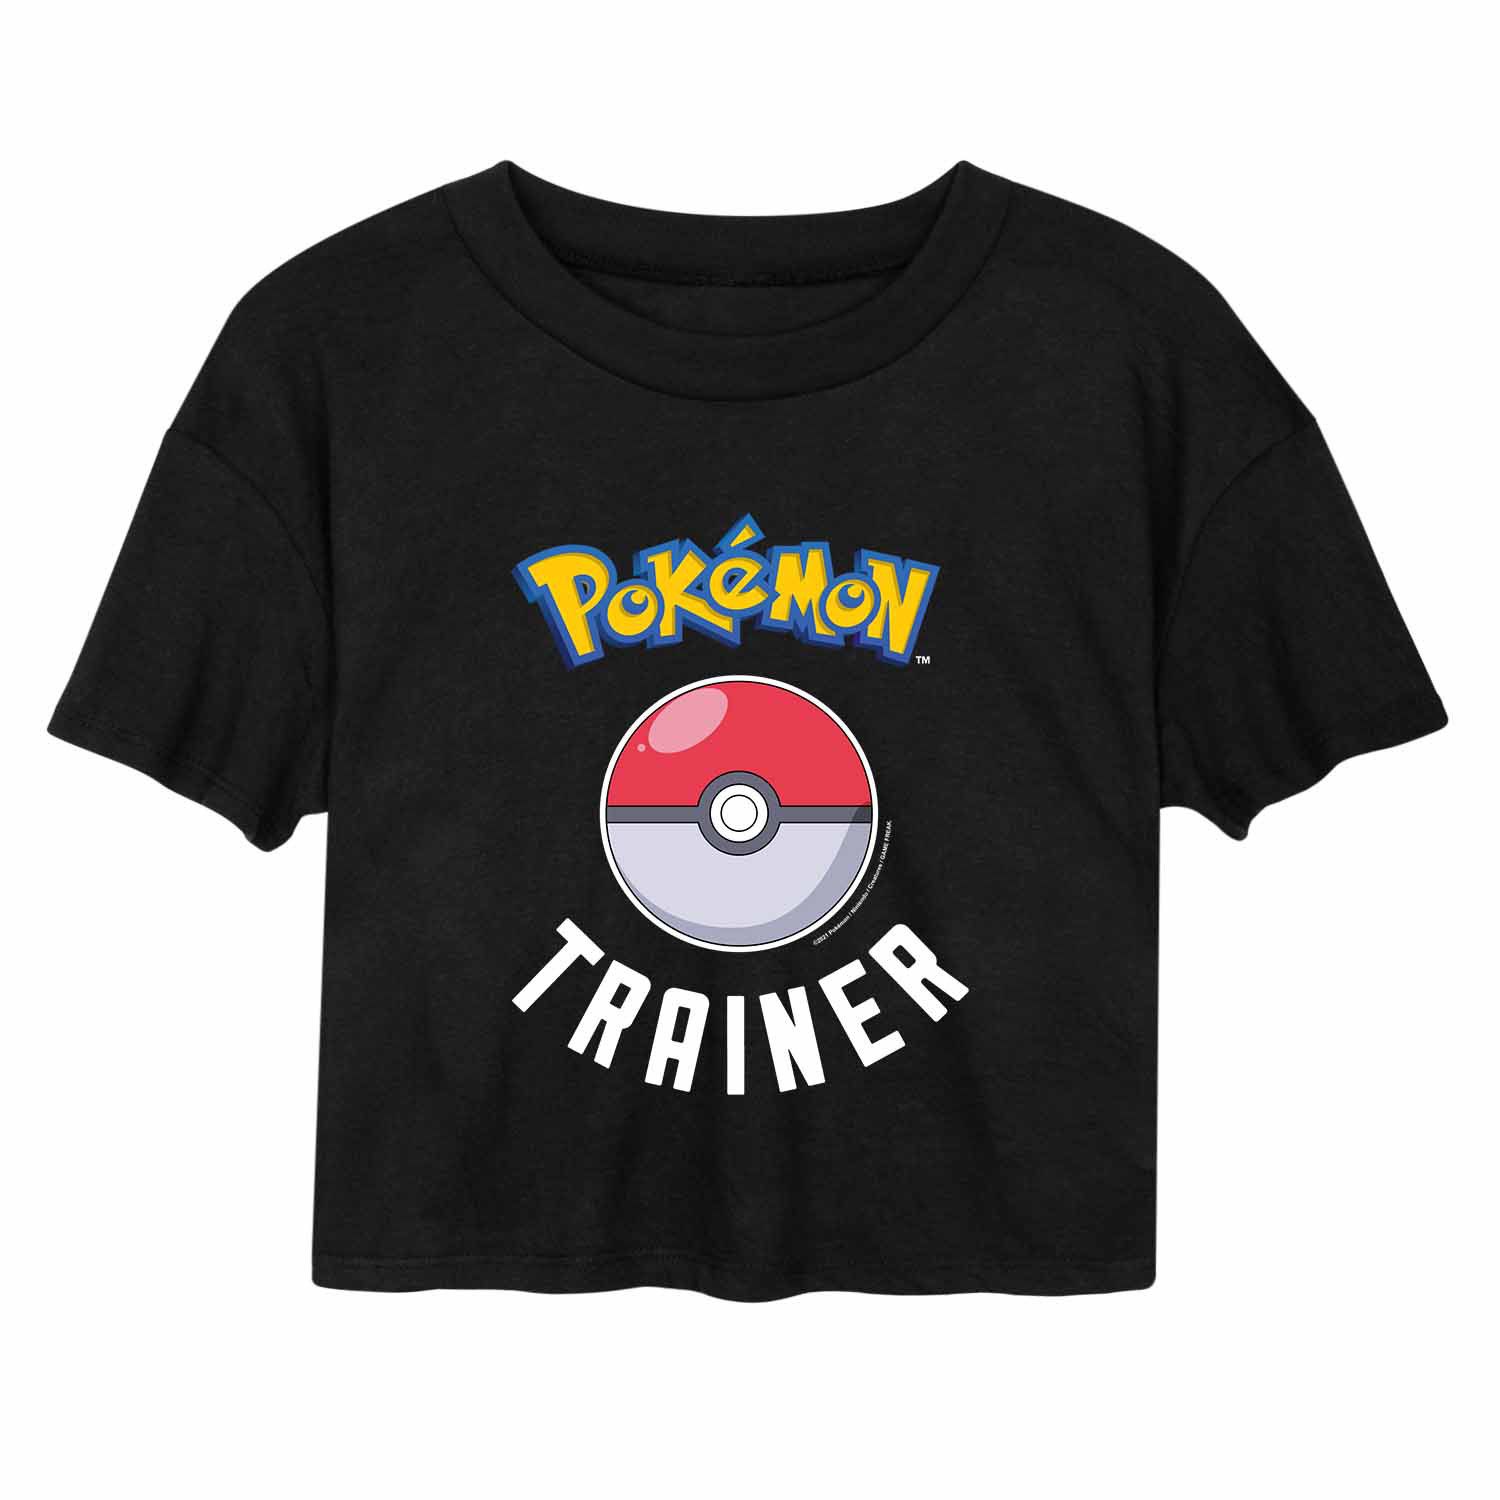 Укороченная футболка с рисунком Pokémon Trainer для юниоров Licensed Character